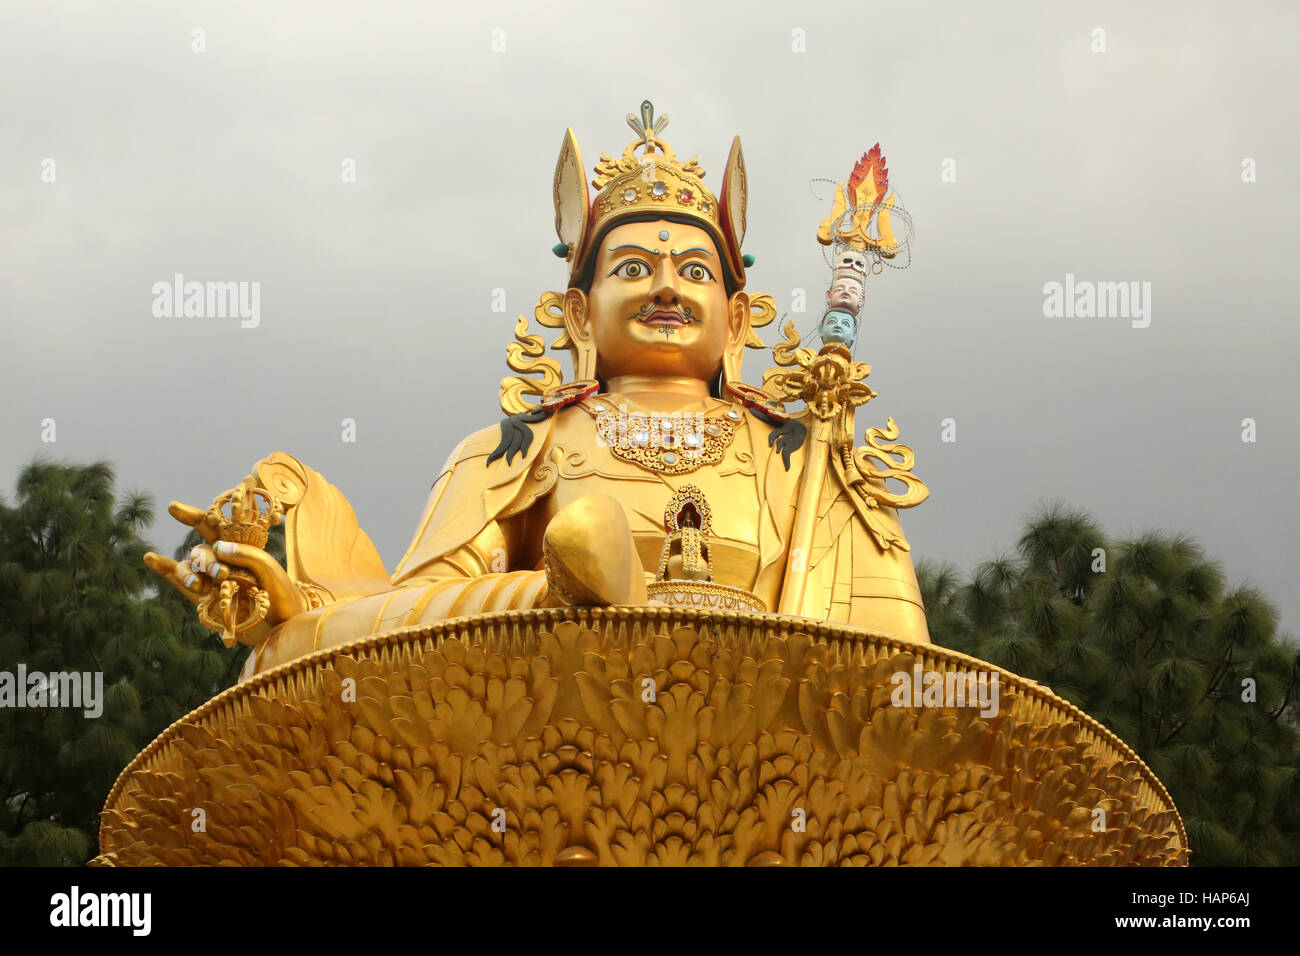 Golden statue of Buddha, Swayambhu Nath temple, Kathmandu, Nepal. Stock Photo